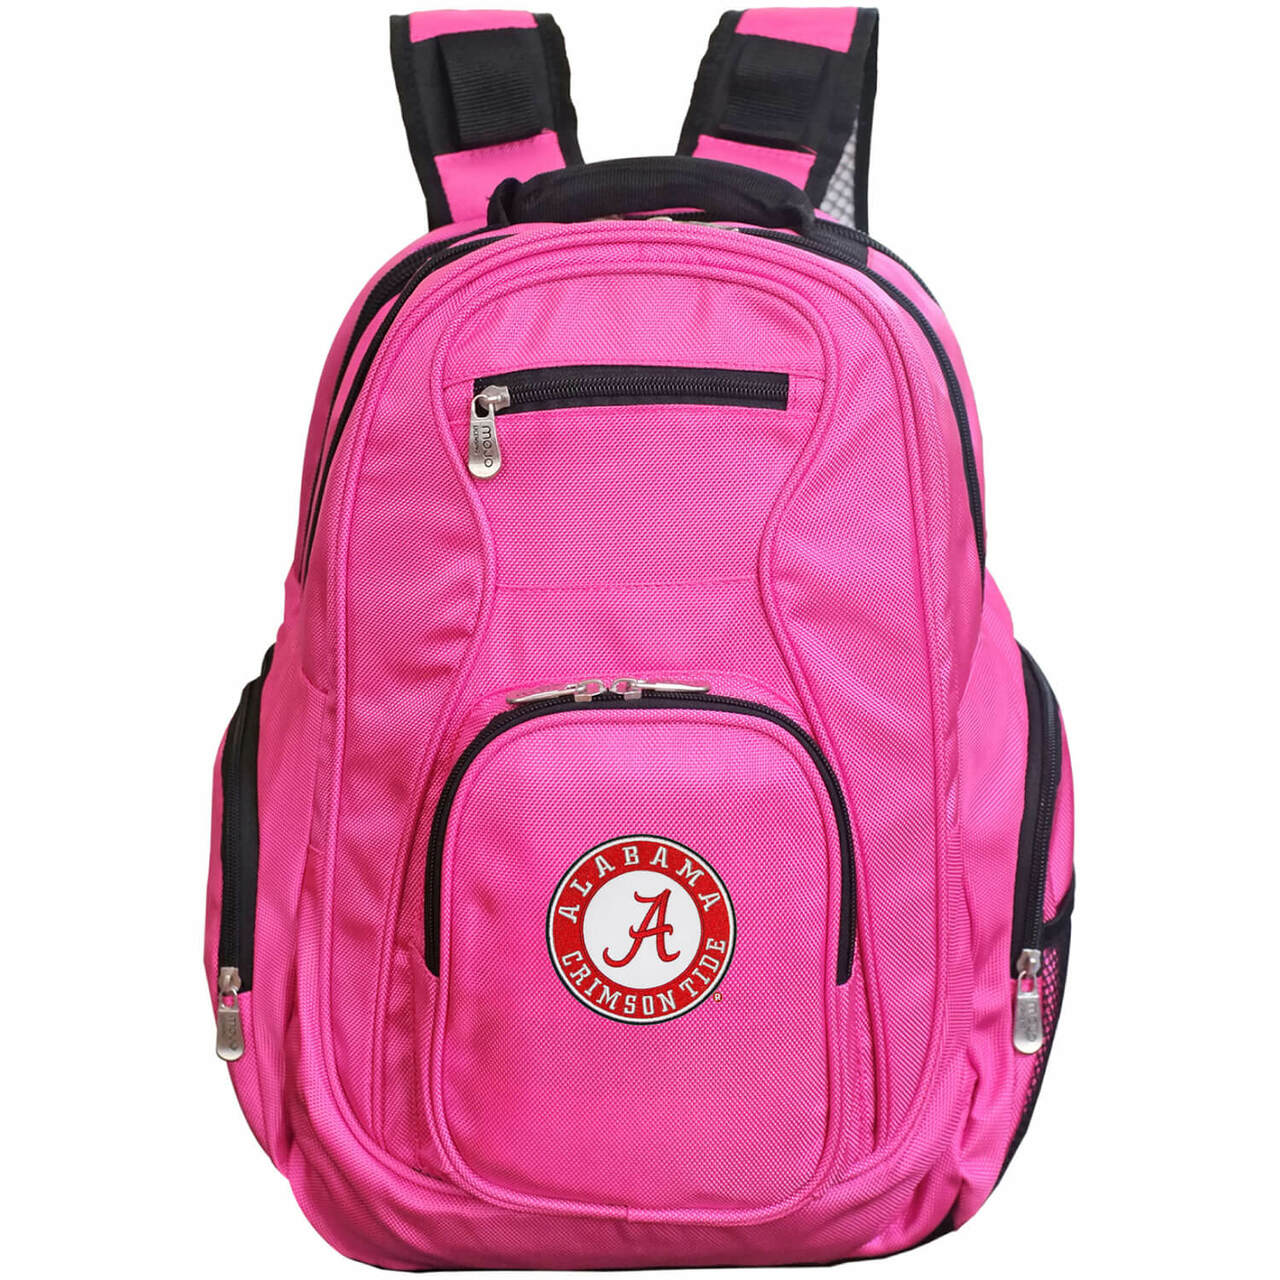 Alabama Crimson Tide Laptop Backpack Pink